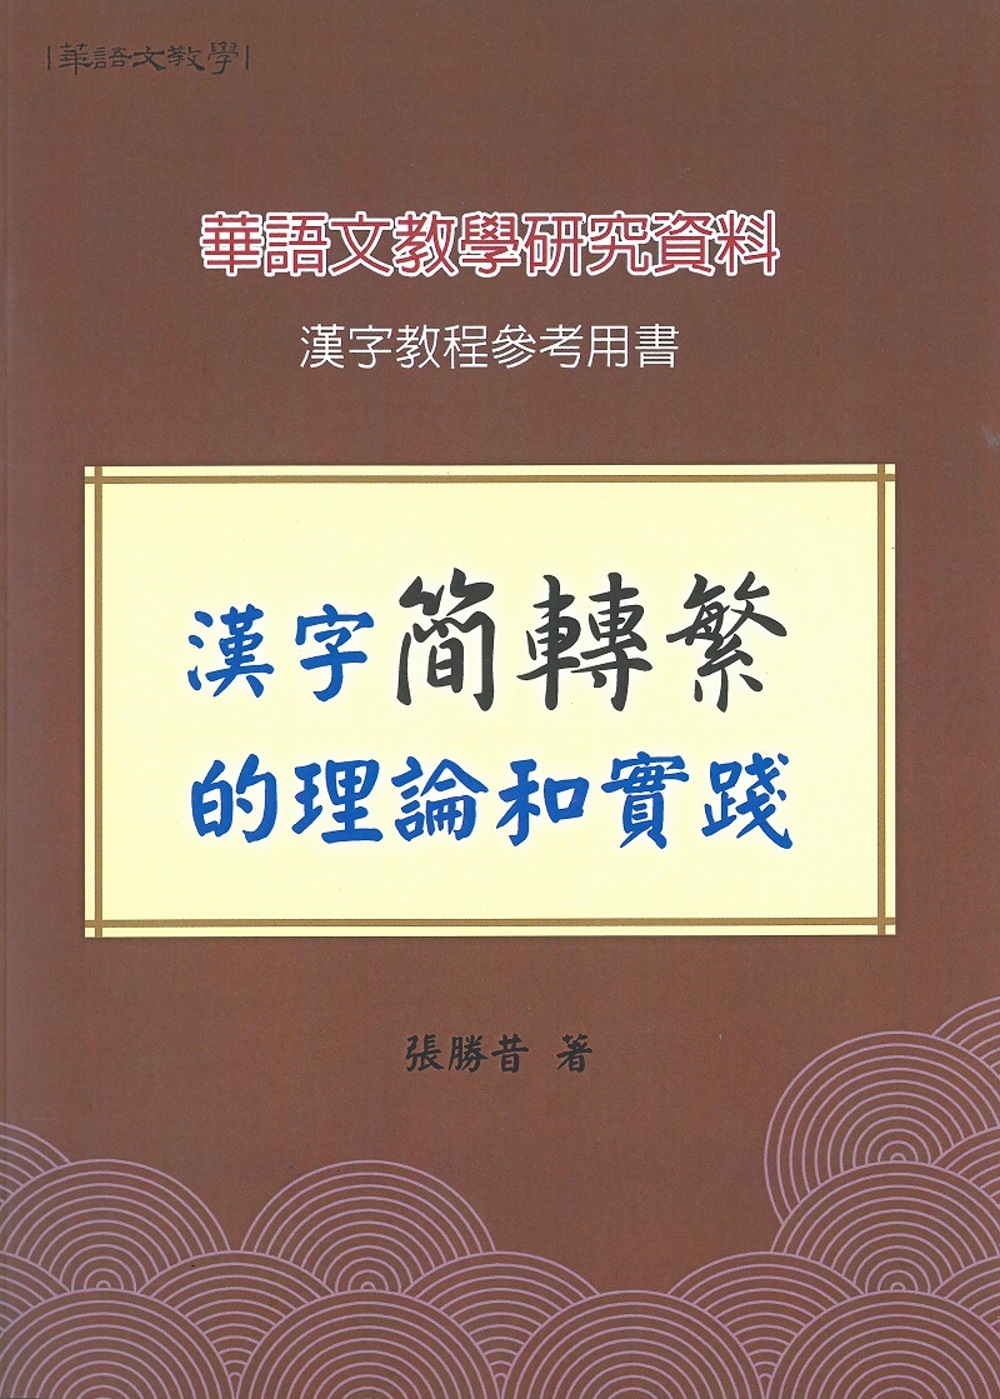 漢字簡轉繁的理論和實踐